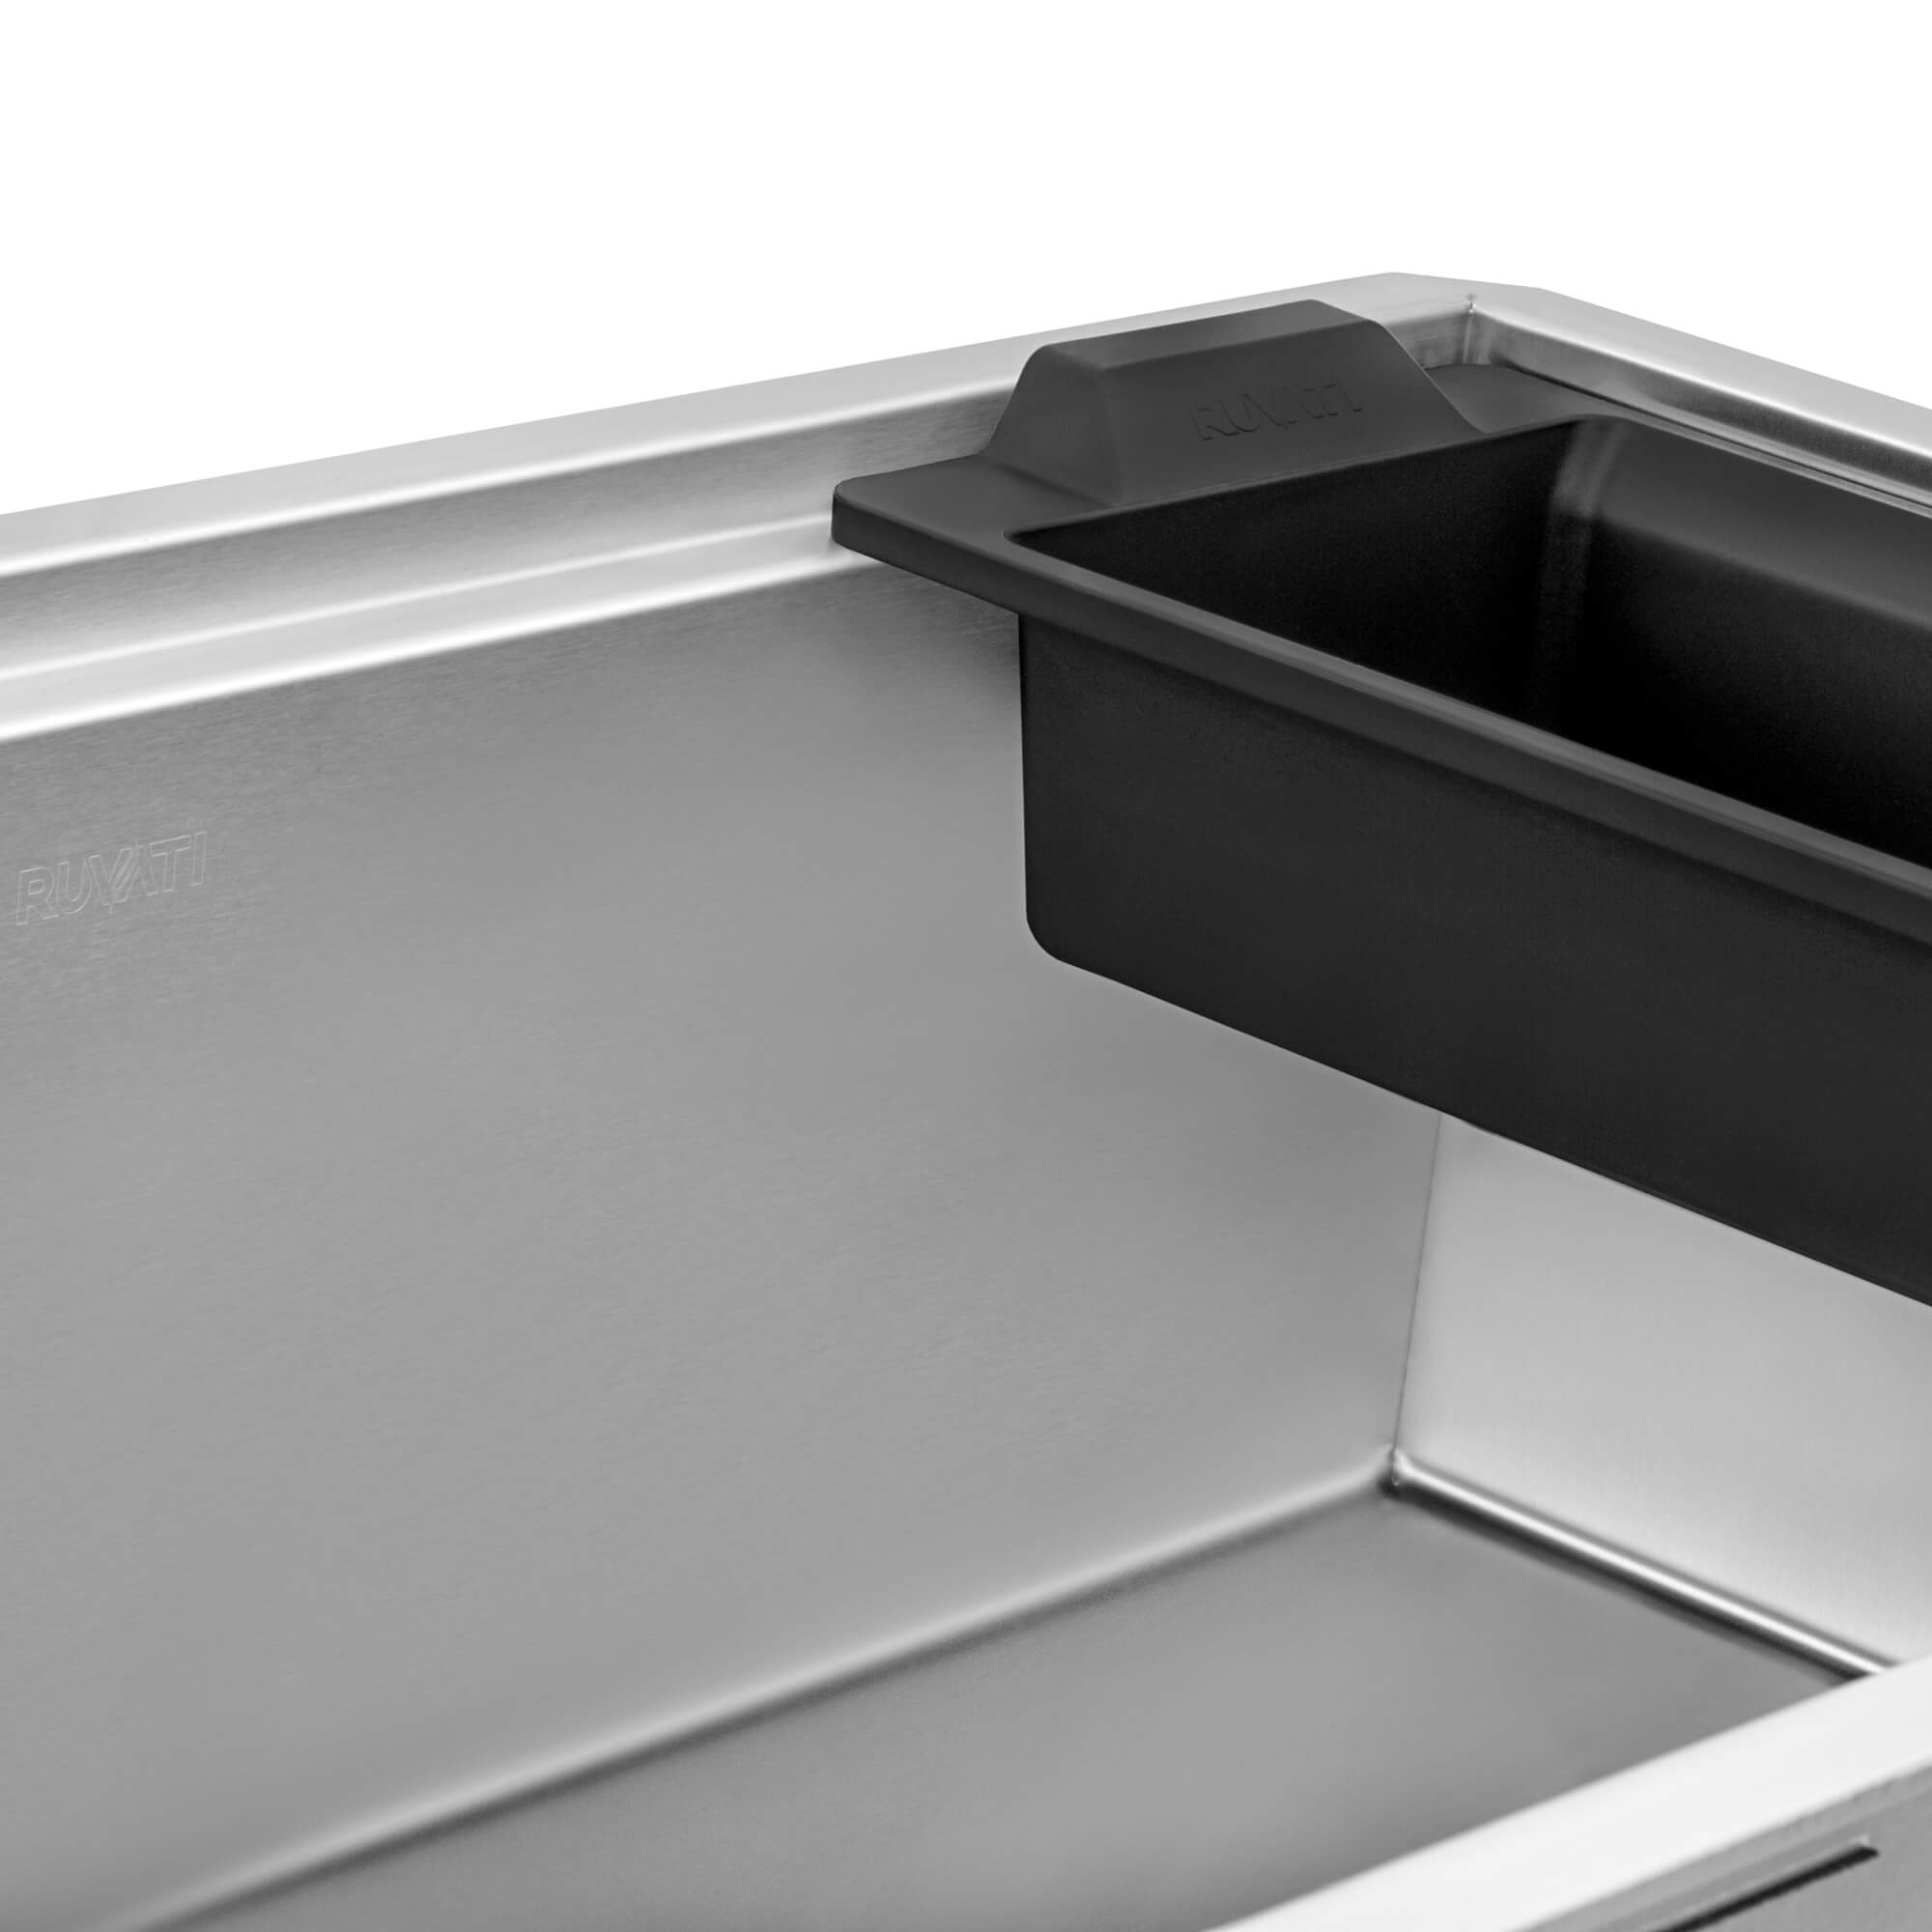 Ruvati - 27-inch Workstation Slope Bottom Offset Drain Undermount 16 Gauge Kitchen Sink – RVH8573